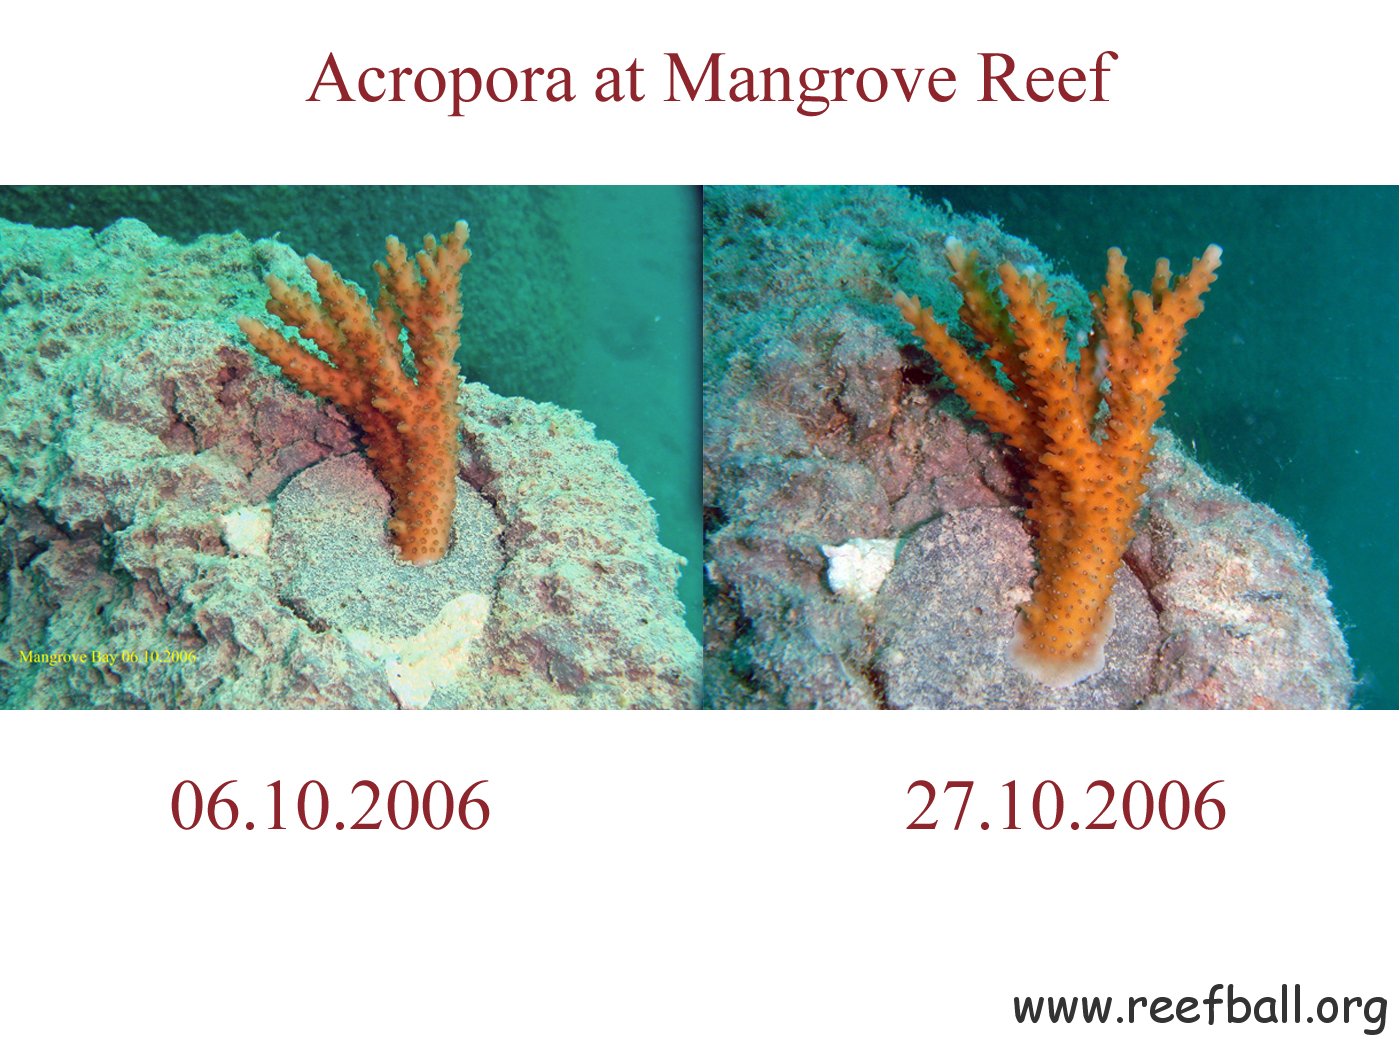 Mangrove Reef 27.10.2006 2